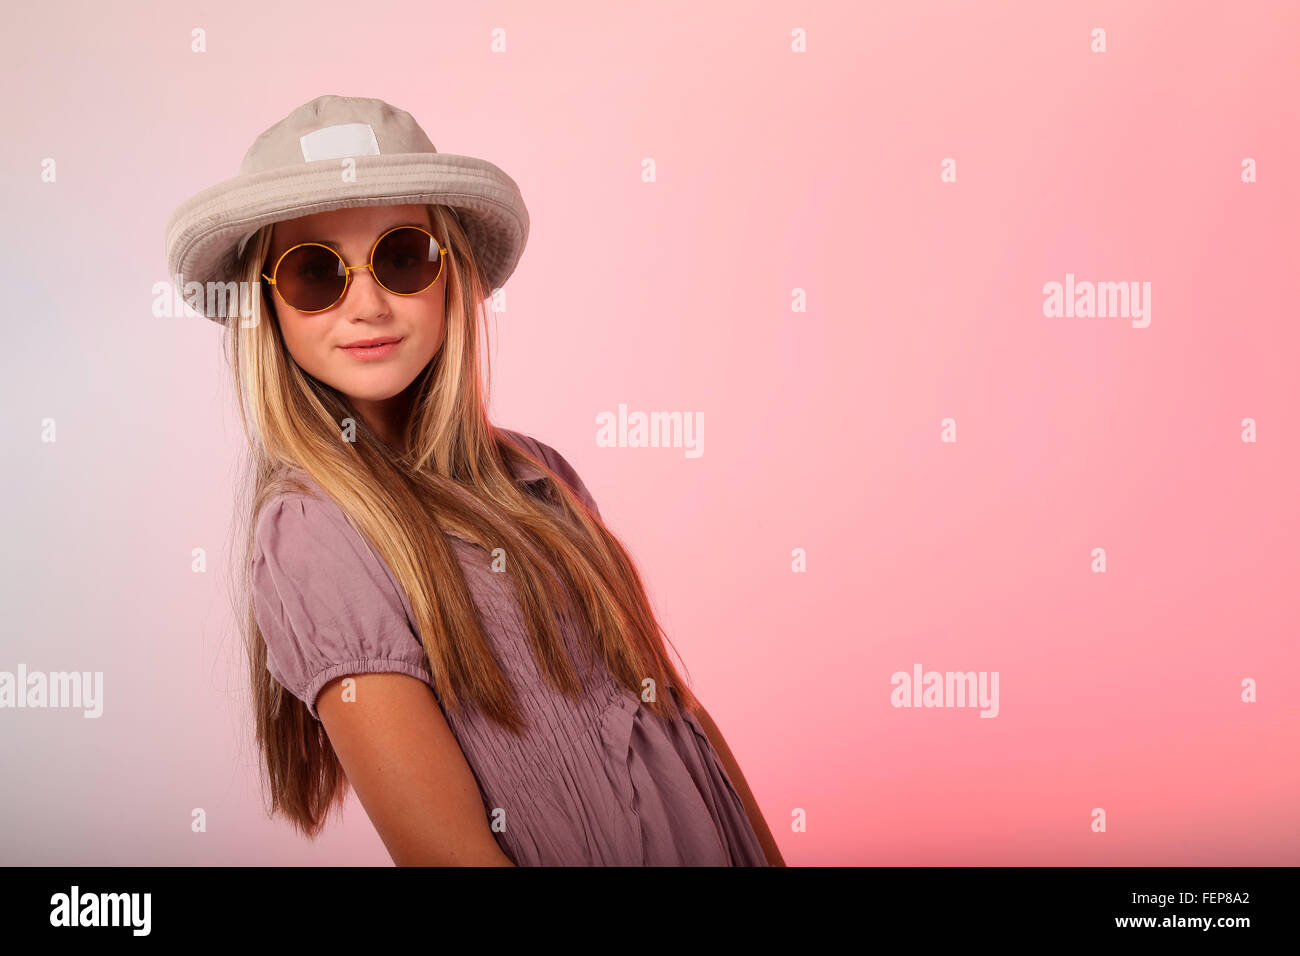 Eine schöne blonde Teenager-Mädchen mit Sonnenbrille im Studio, hat sie auch einen Hut auf dem Kopf. Stockfoto